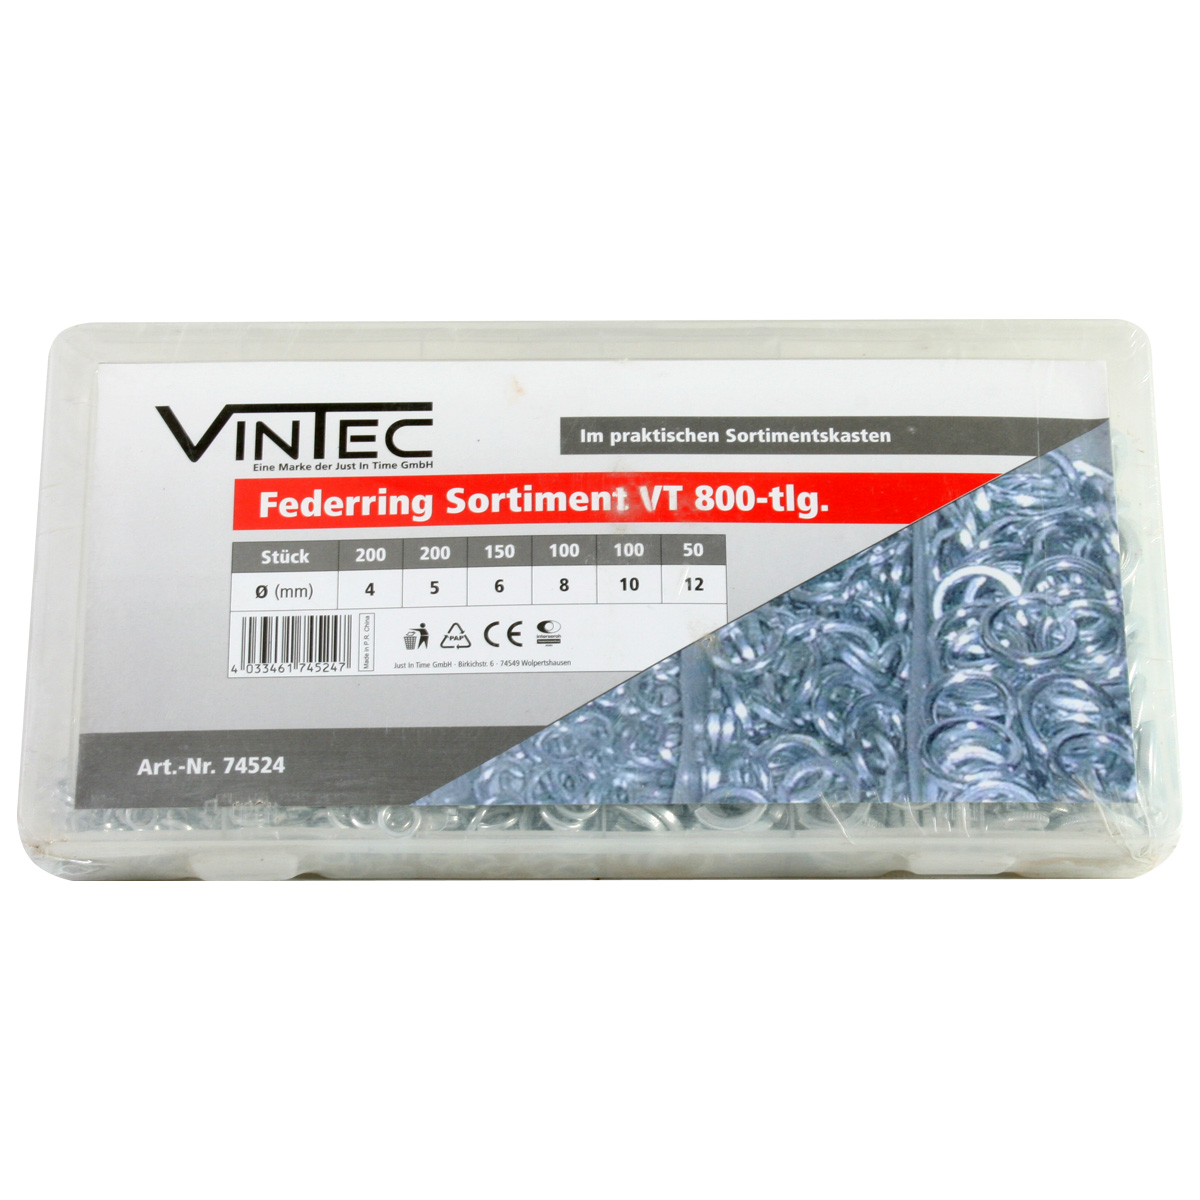 Federring Sortiment "VT 800-tlg." von VINTEC